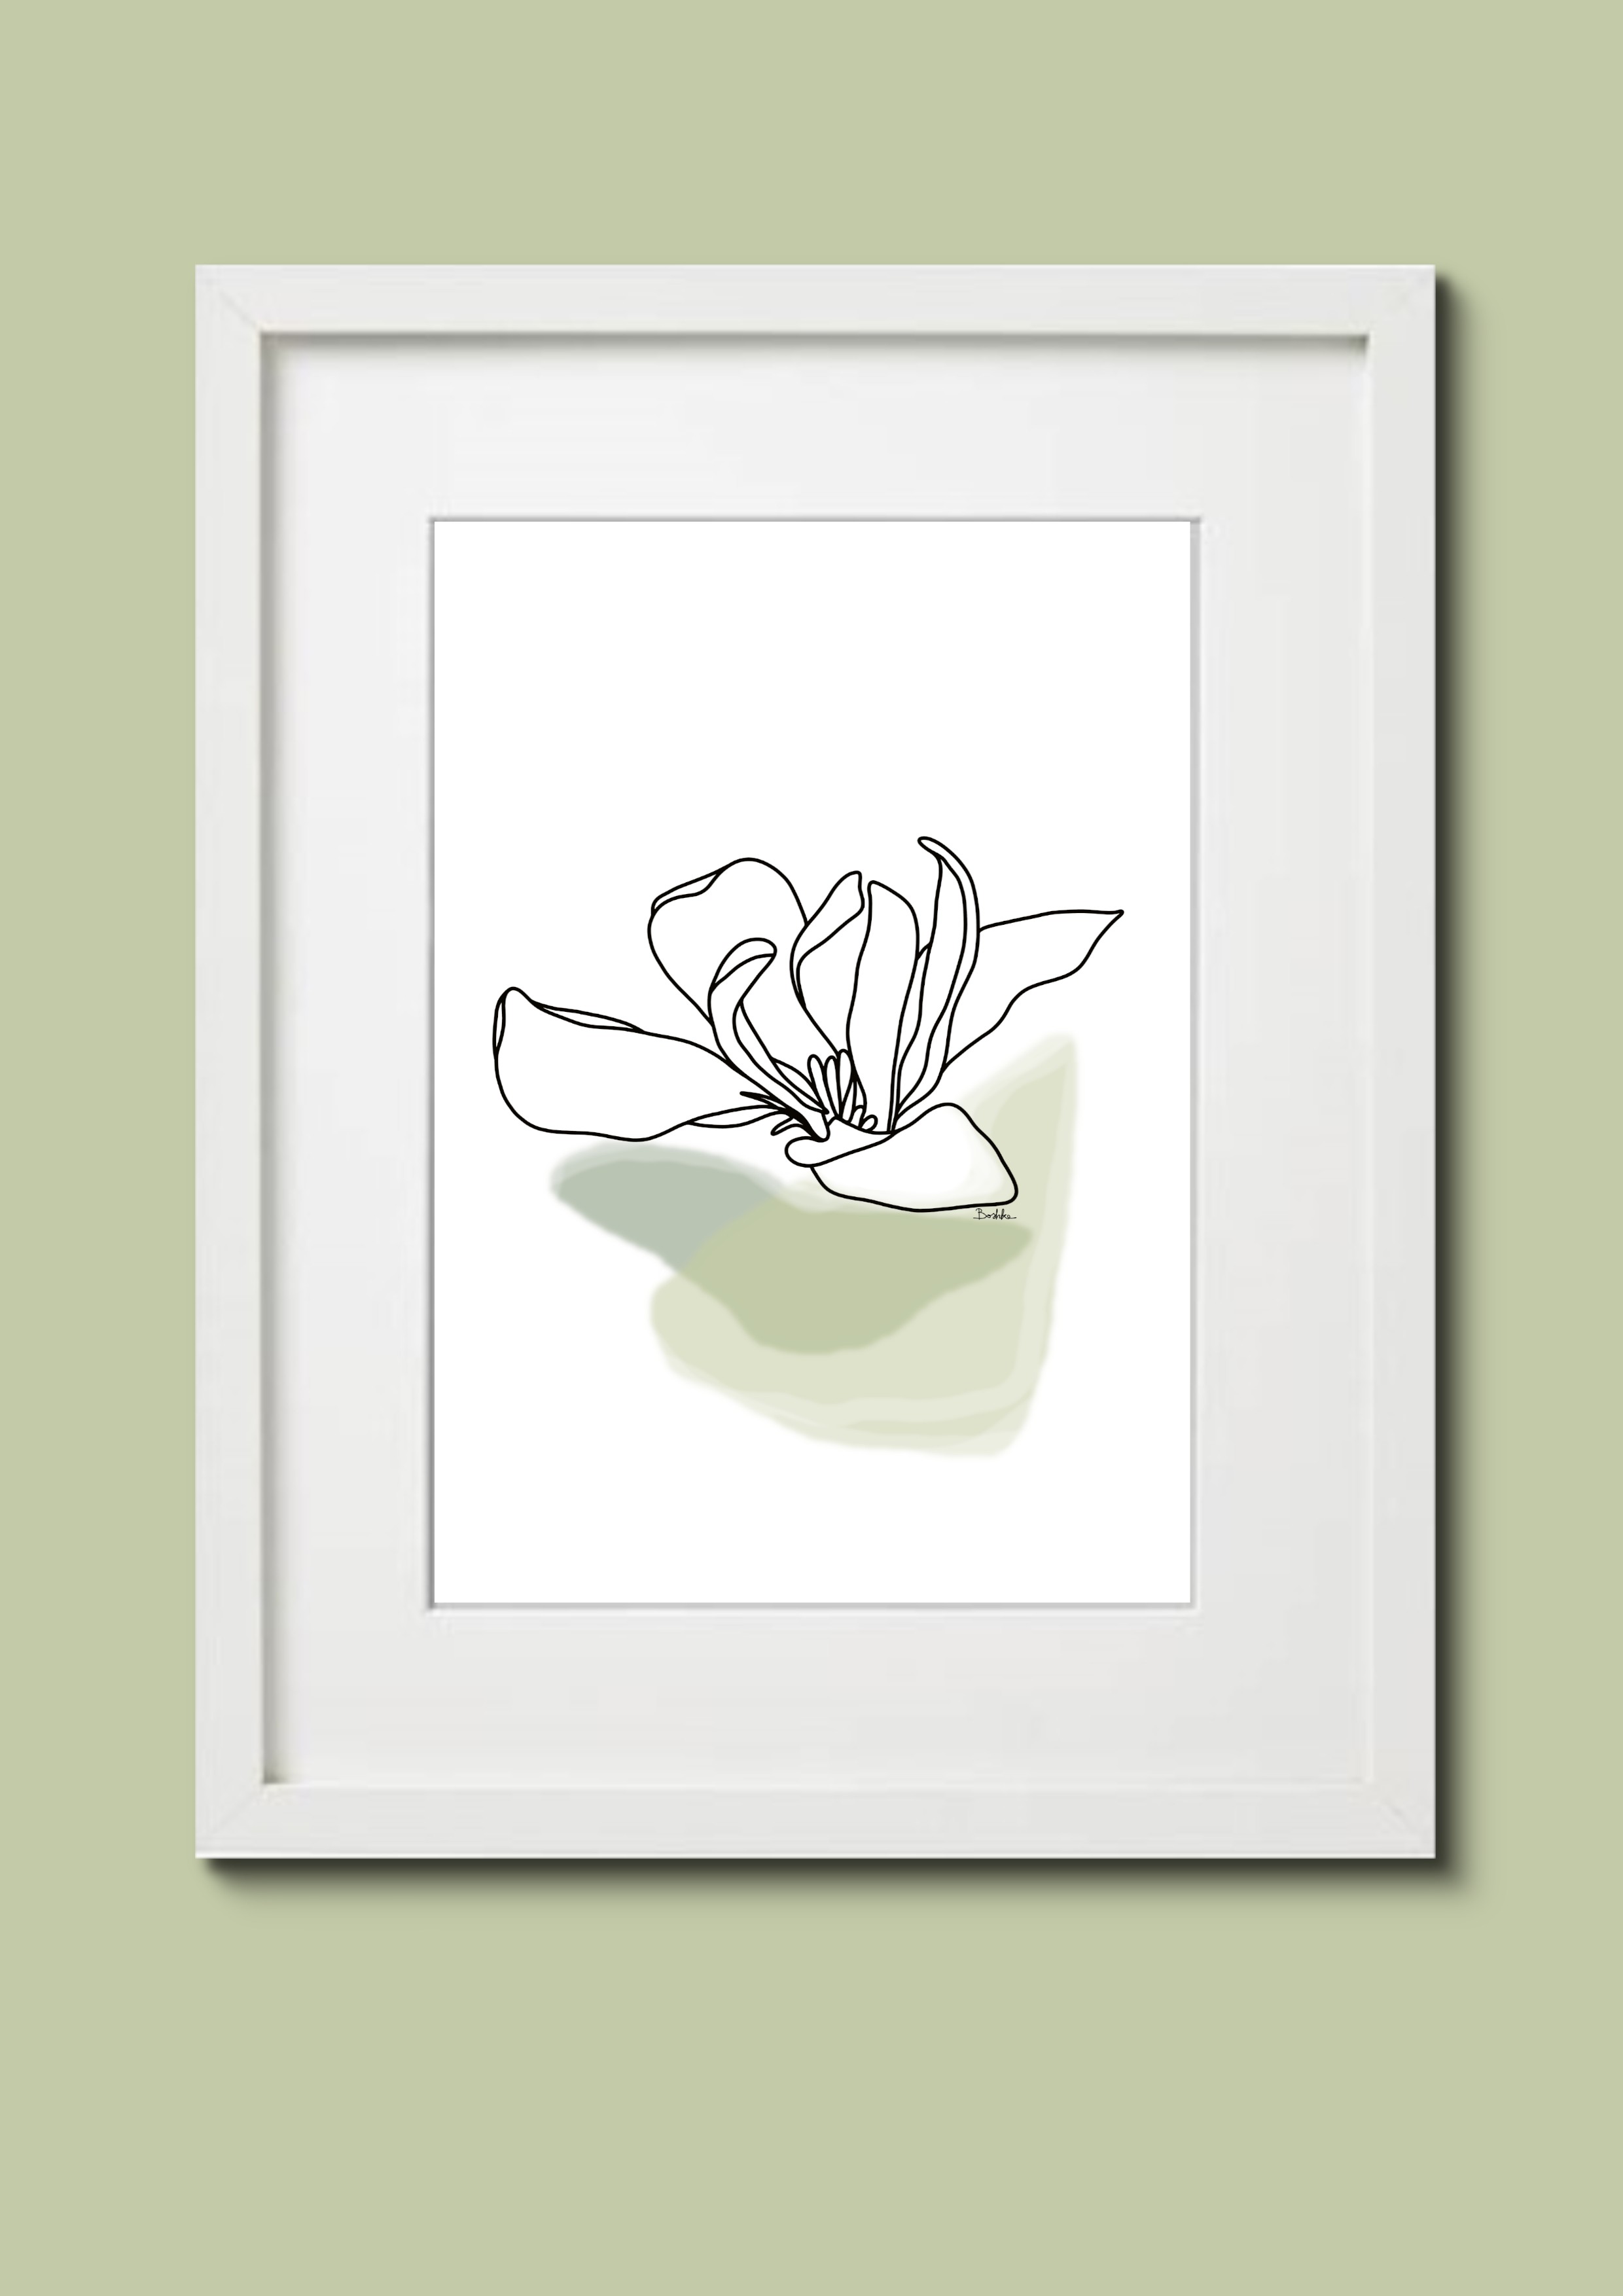 Grafika "Magnolia" plik cyfrowy do pobrania, wydrukuj jak chcesz